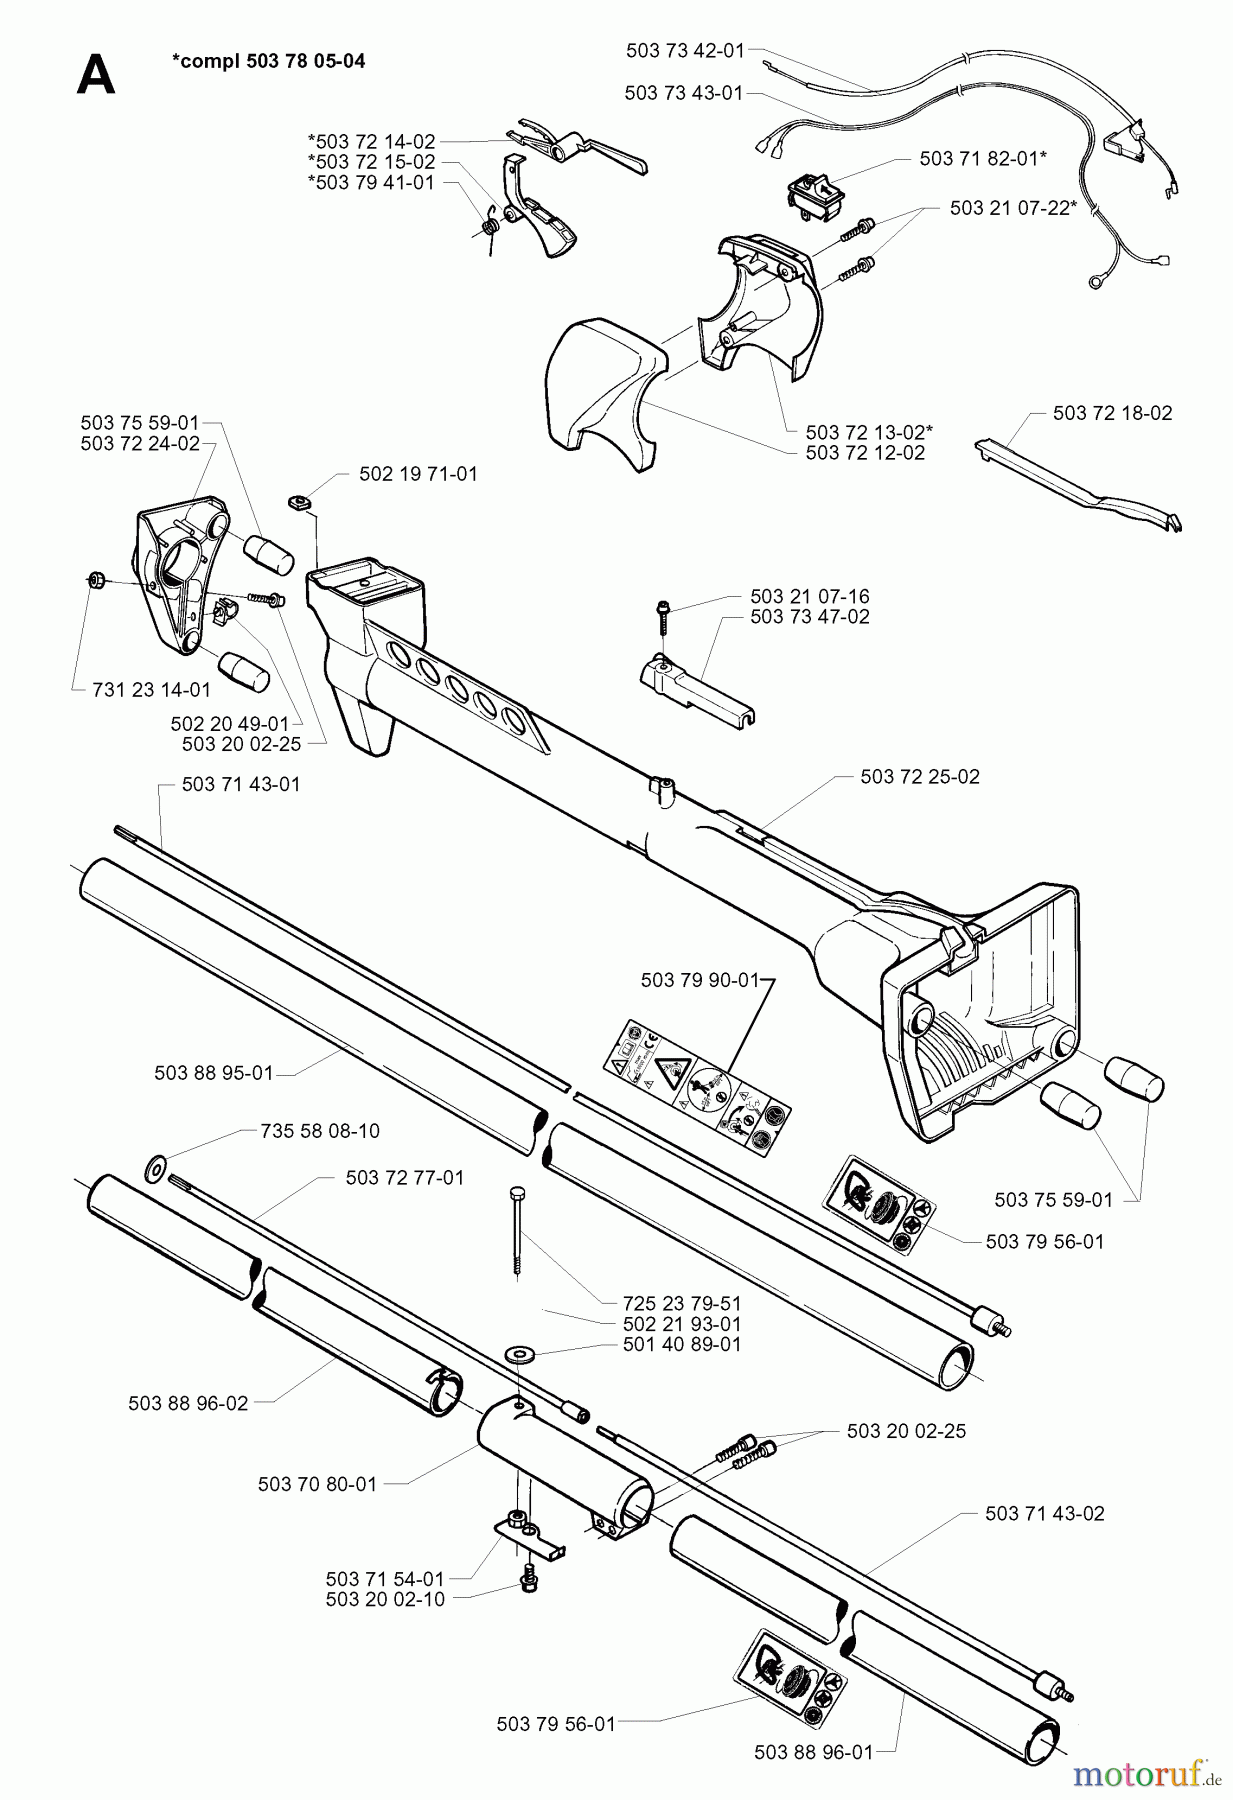  Jonsered Motorsensen, Trimmer GR26 - Jonsered String/Brush Trimmer (1997-02) SHAFT HANDLE